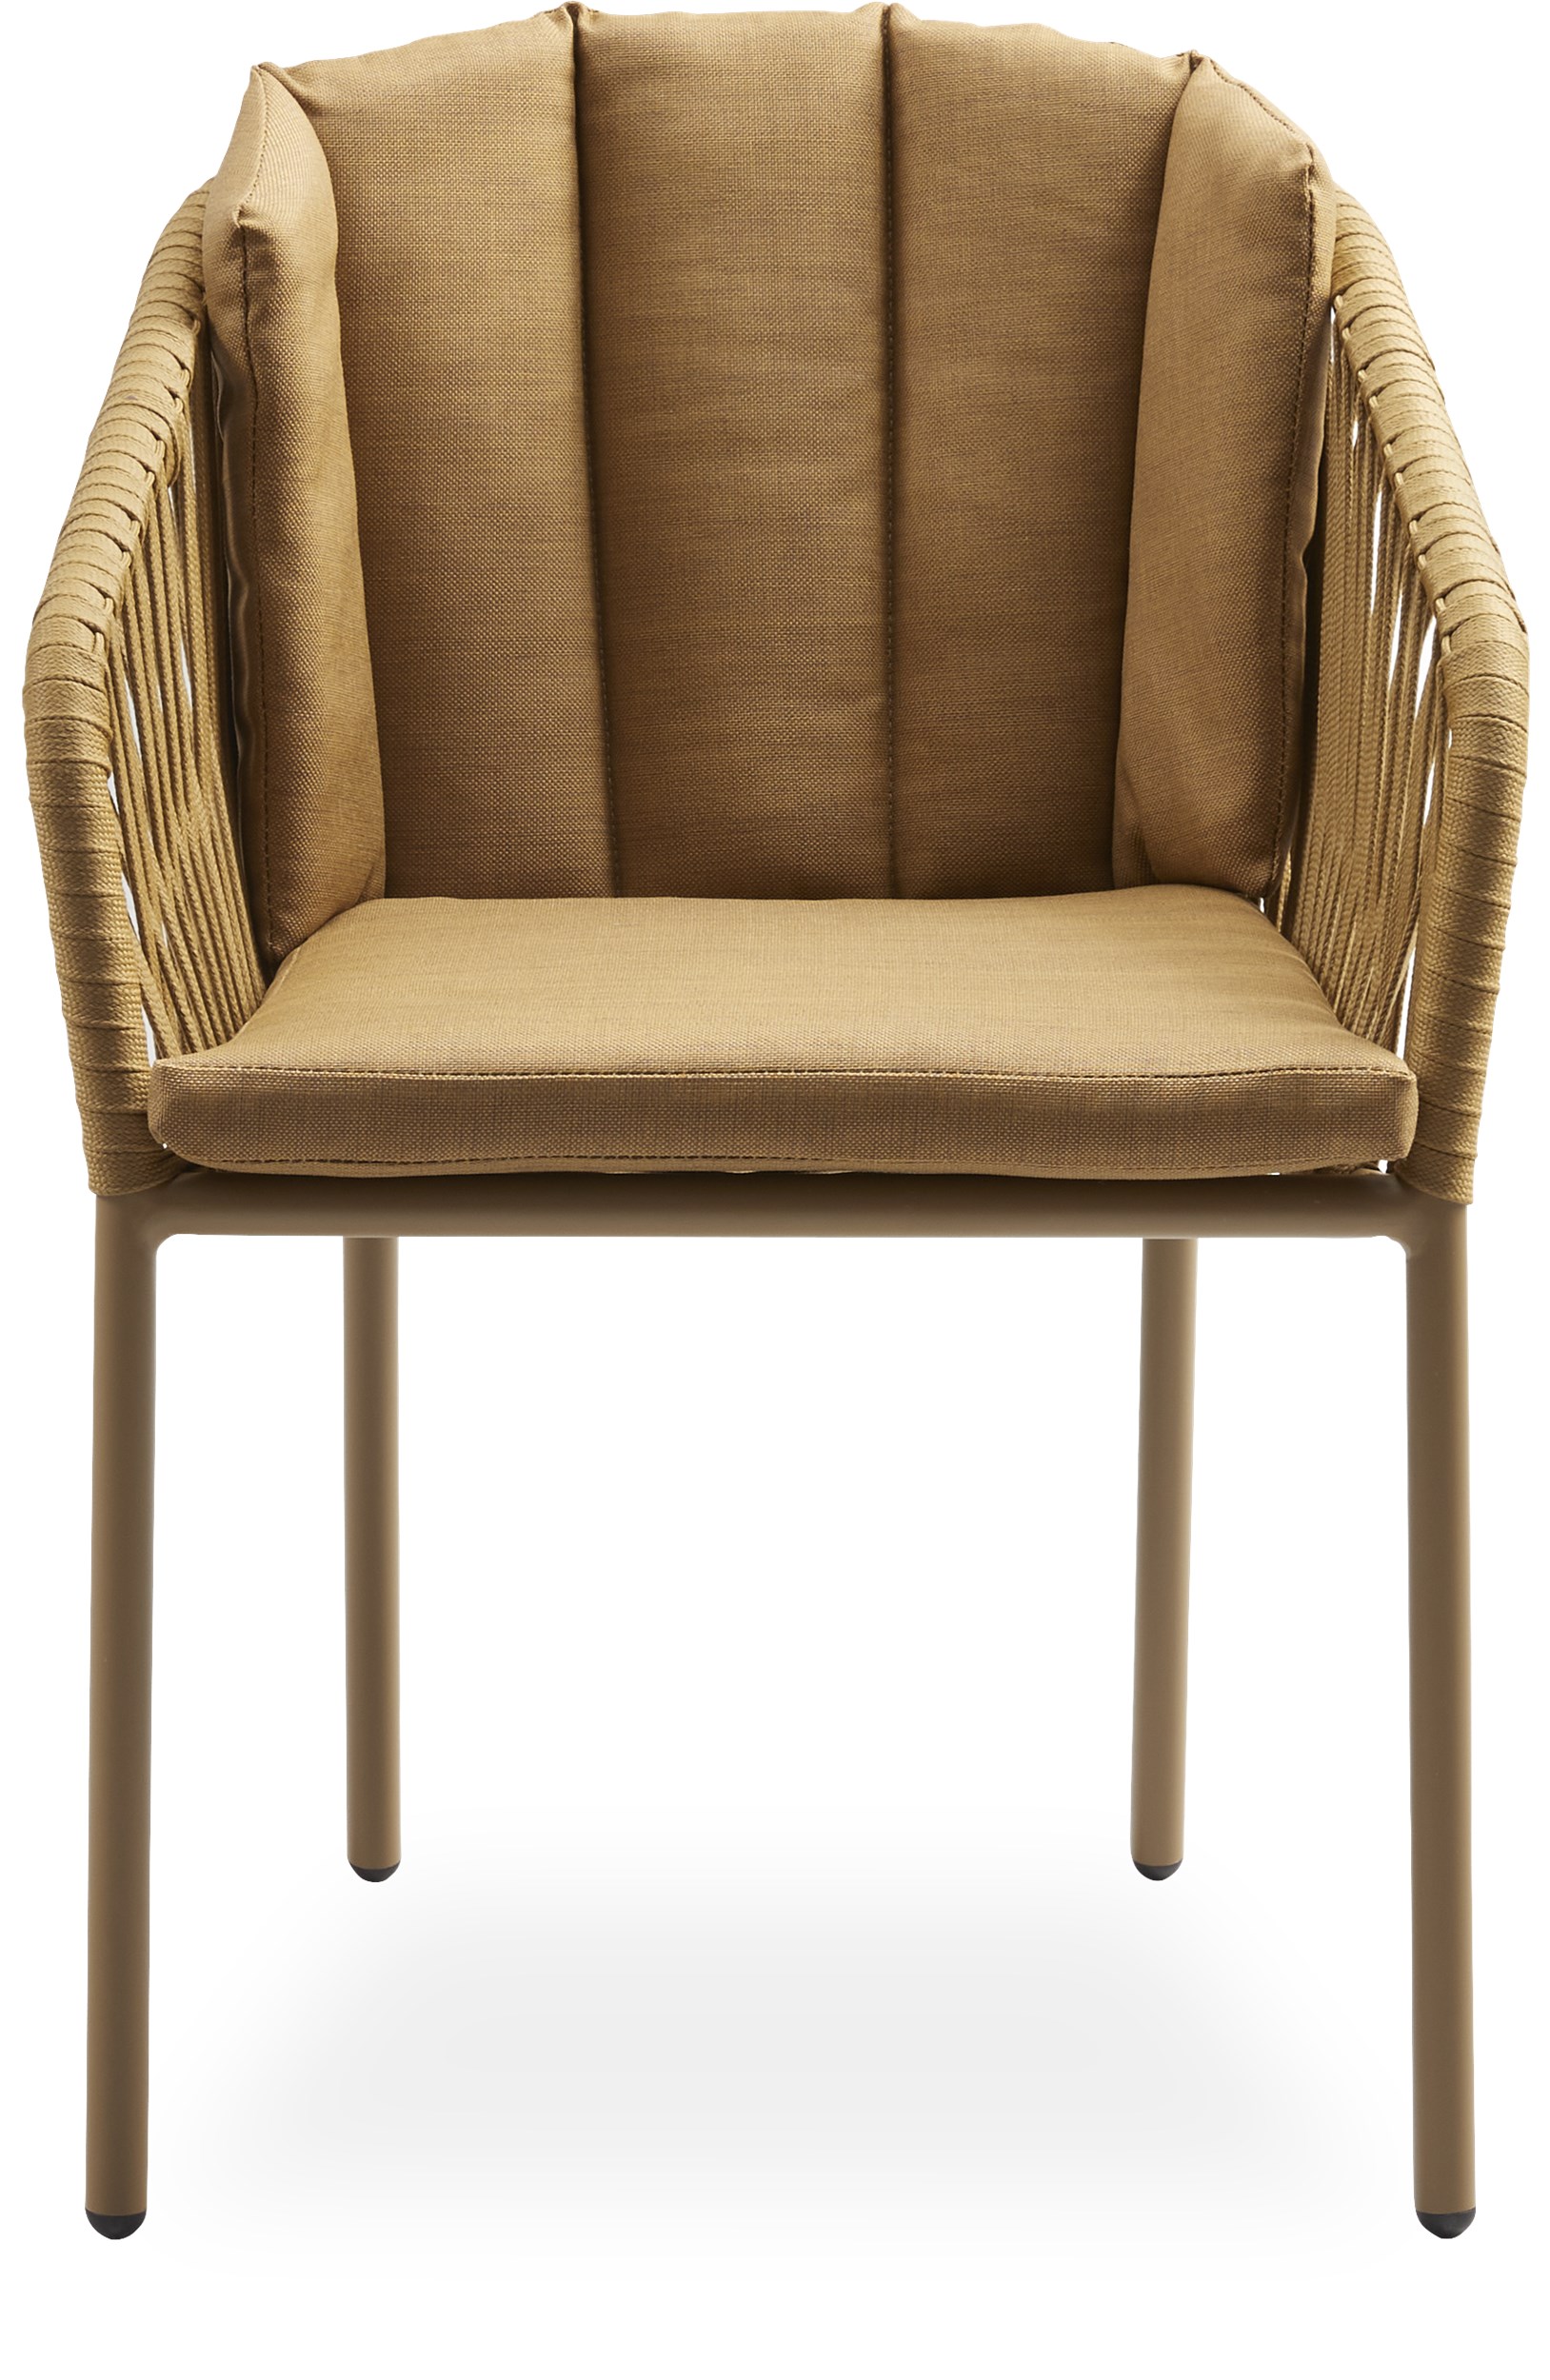 Ella Trädgårdsstol - Stomme i pulverlackerat aluminium, rygg och sits i ockrafärgat, platt rep och sittdynor i ockrafärgad olefin